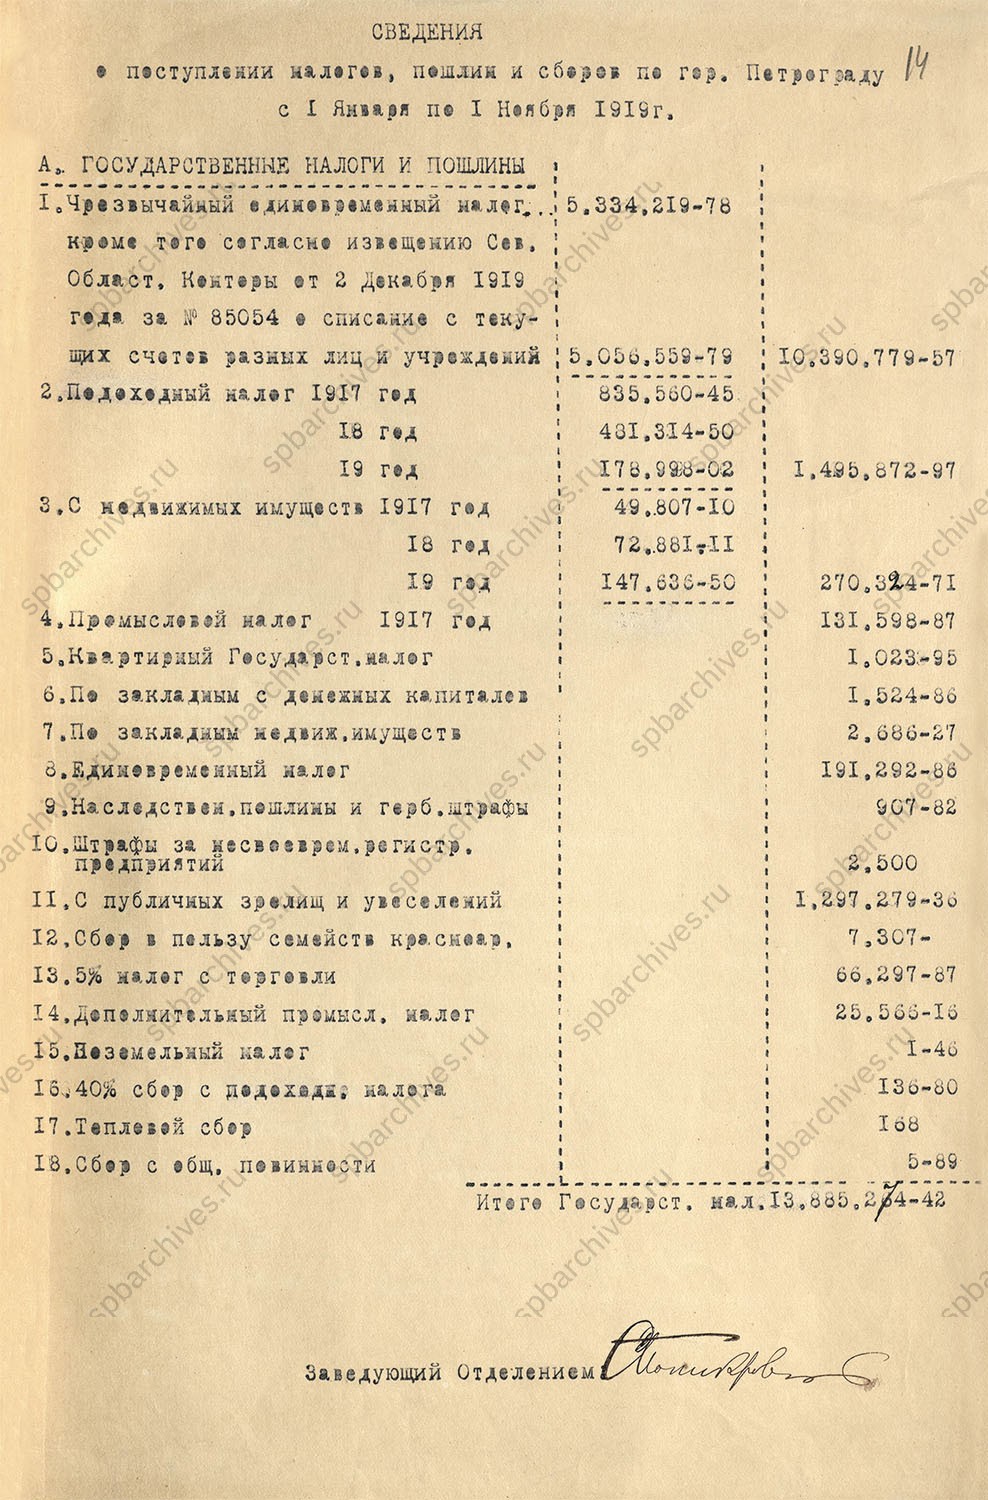 Сводка поступления налогов, пошлин и сборов с 1 января по 1 ноября 1919 г.<br />
Ноябрь 1919 г.<br />
<em>ЦГА СПб. Ф.1853. Оп.6.<br />
Д.5. Л.14-15.</em>